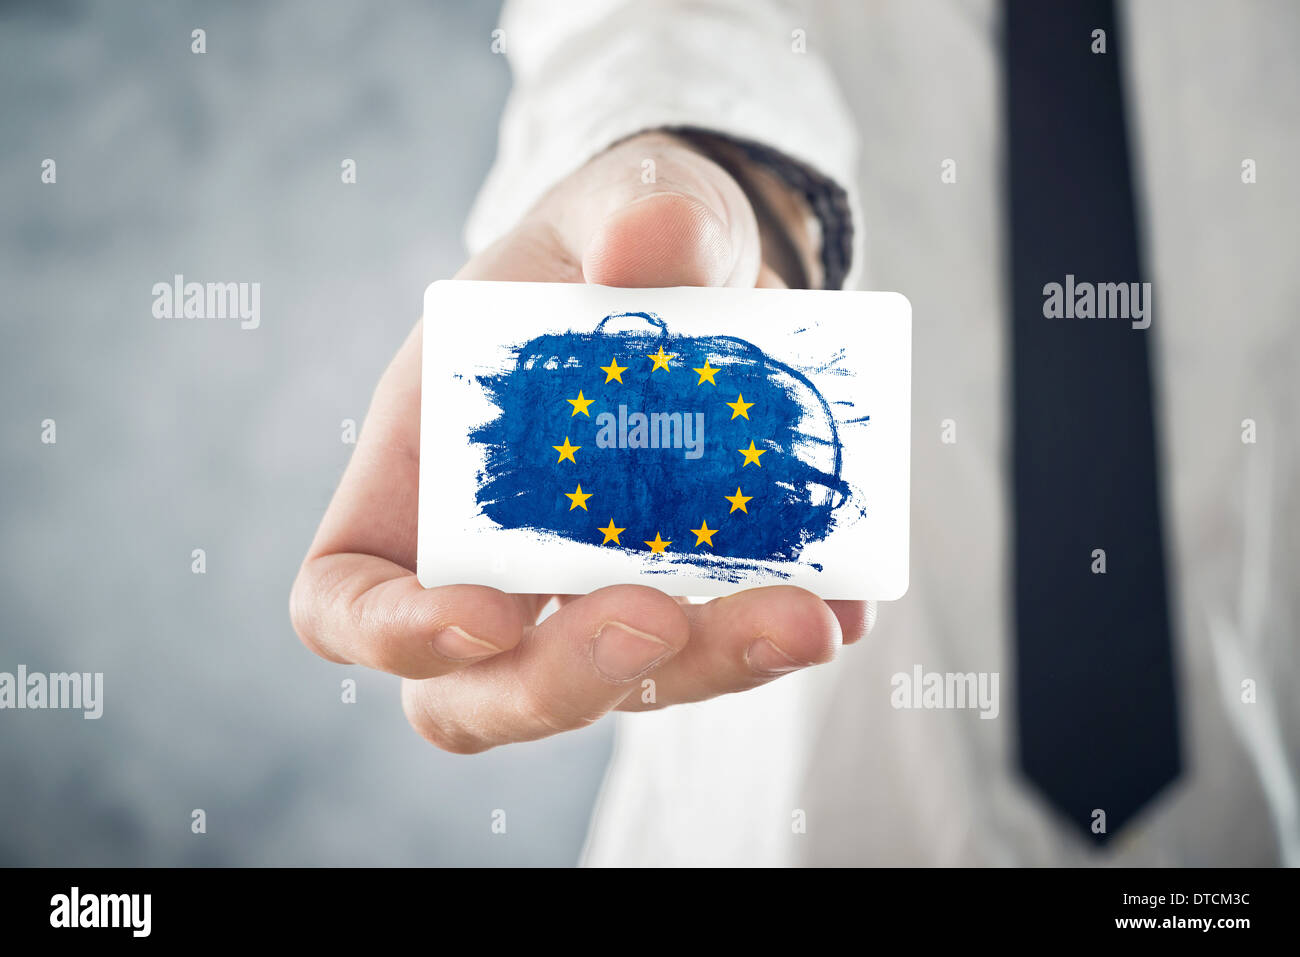 Businessman holding européenne carte de visite avec drapeau de l'Union européenne. La coopération internationale, les investissements. Banque D'Images